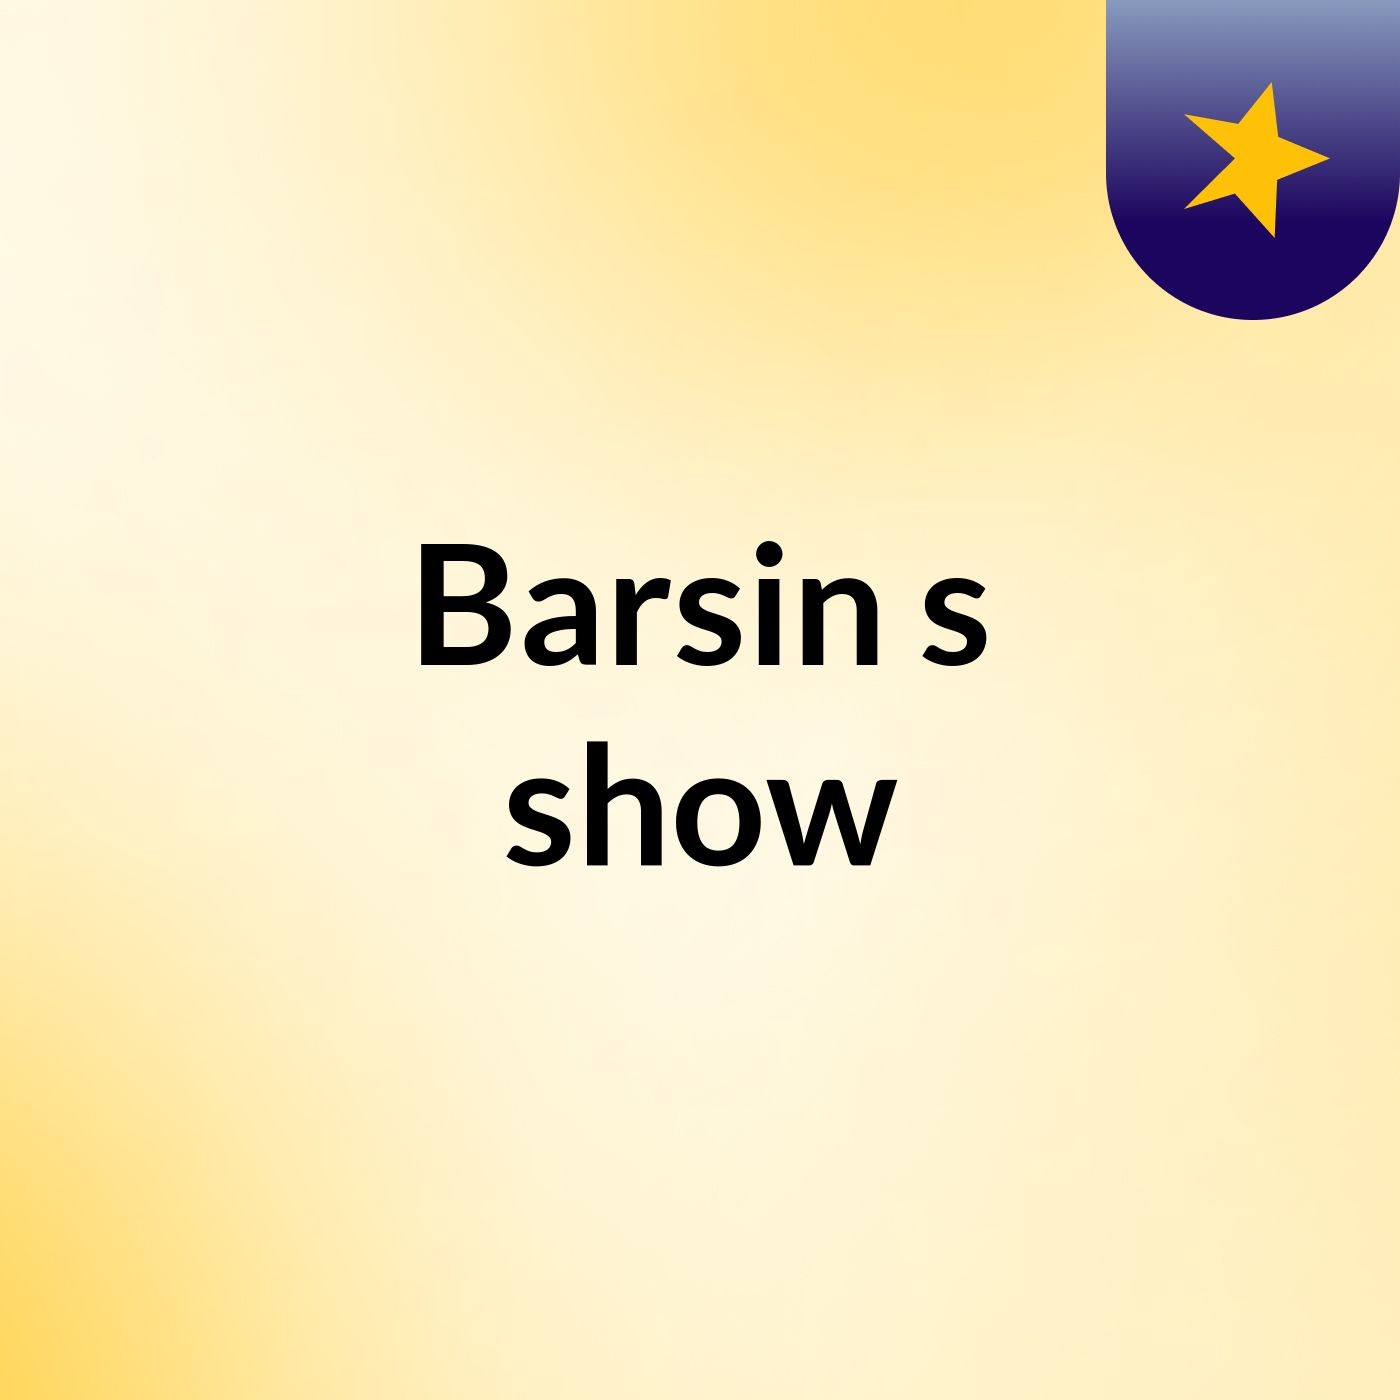 Barsin's show